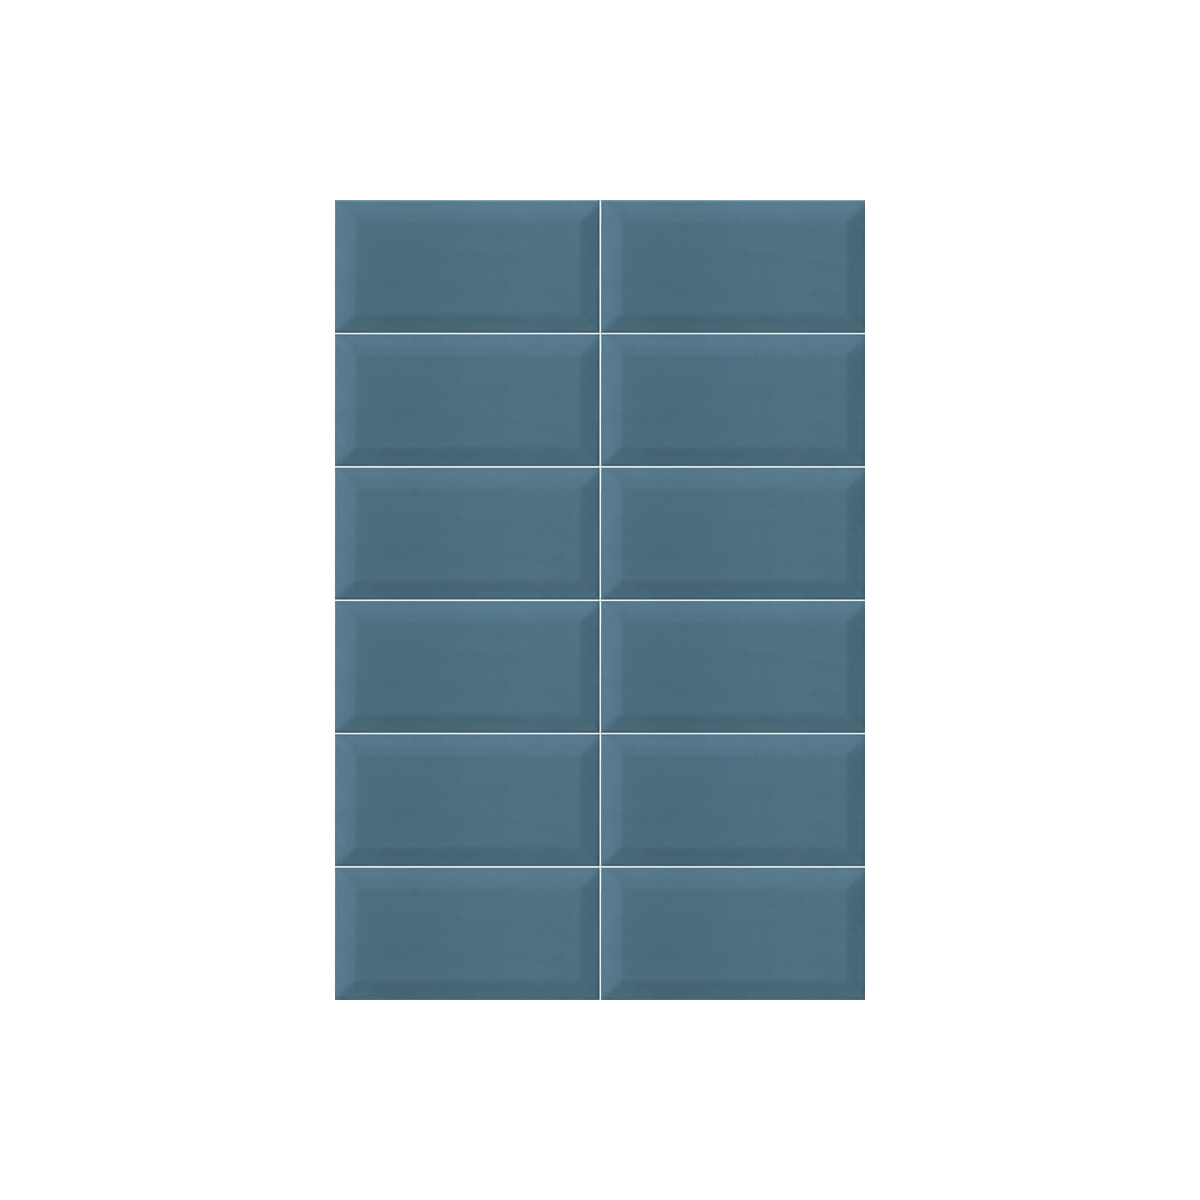 Bissel Blu Grey brillo 10x20 (m2)